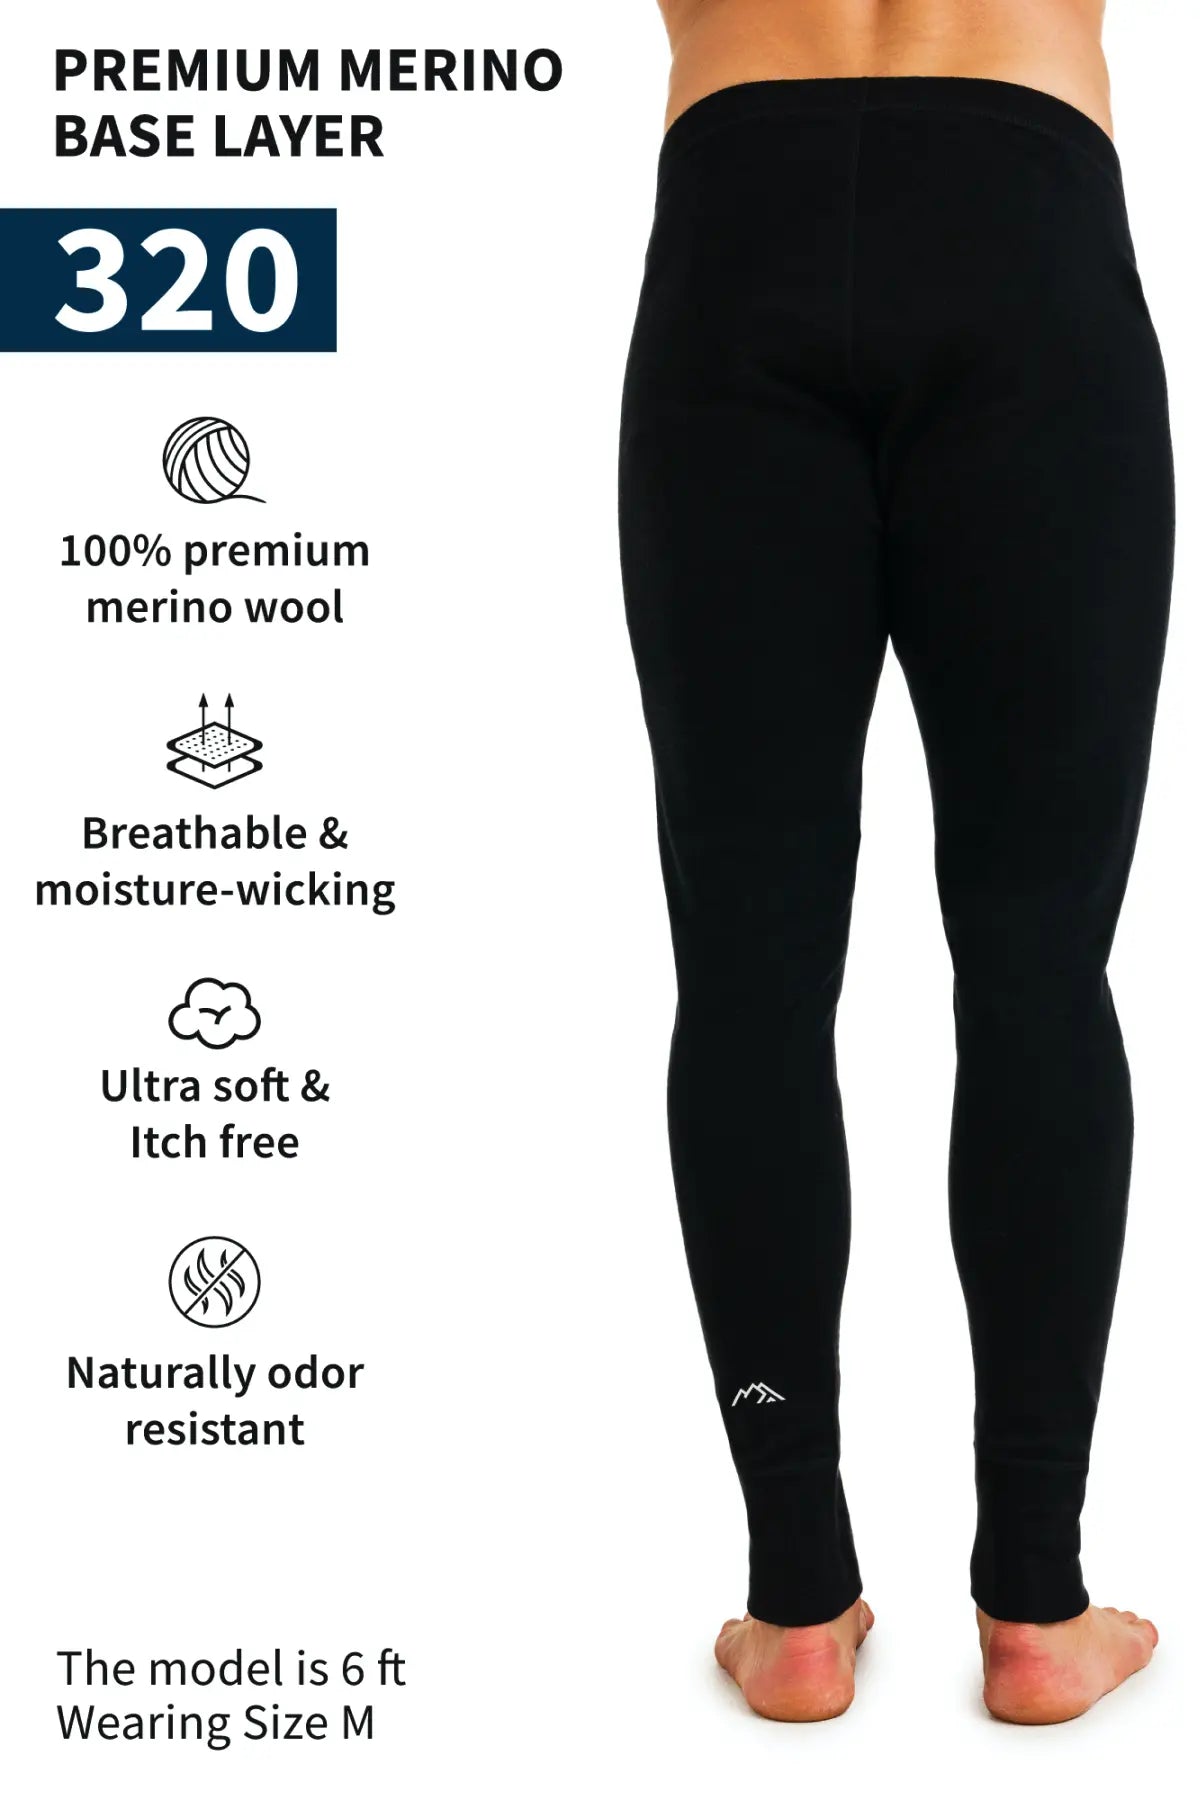 Women's Merino Wool Pants - Base Layer Black, Bottom, Underwear, Thermal  Leggings, Midweight